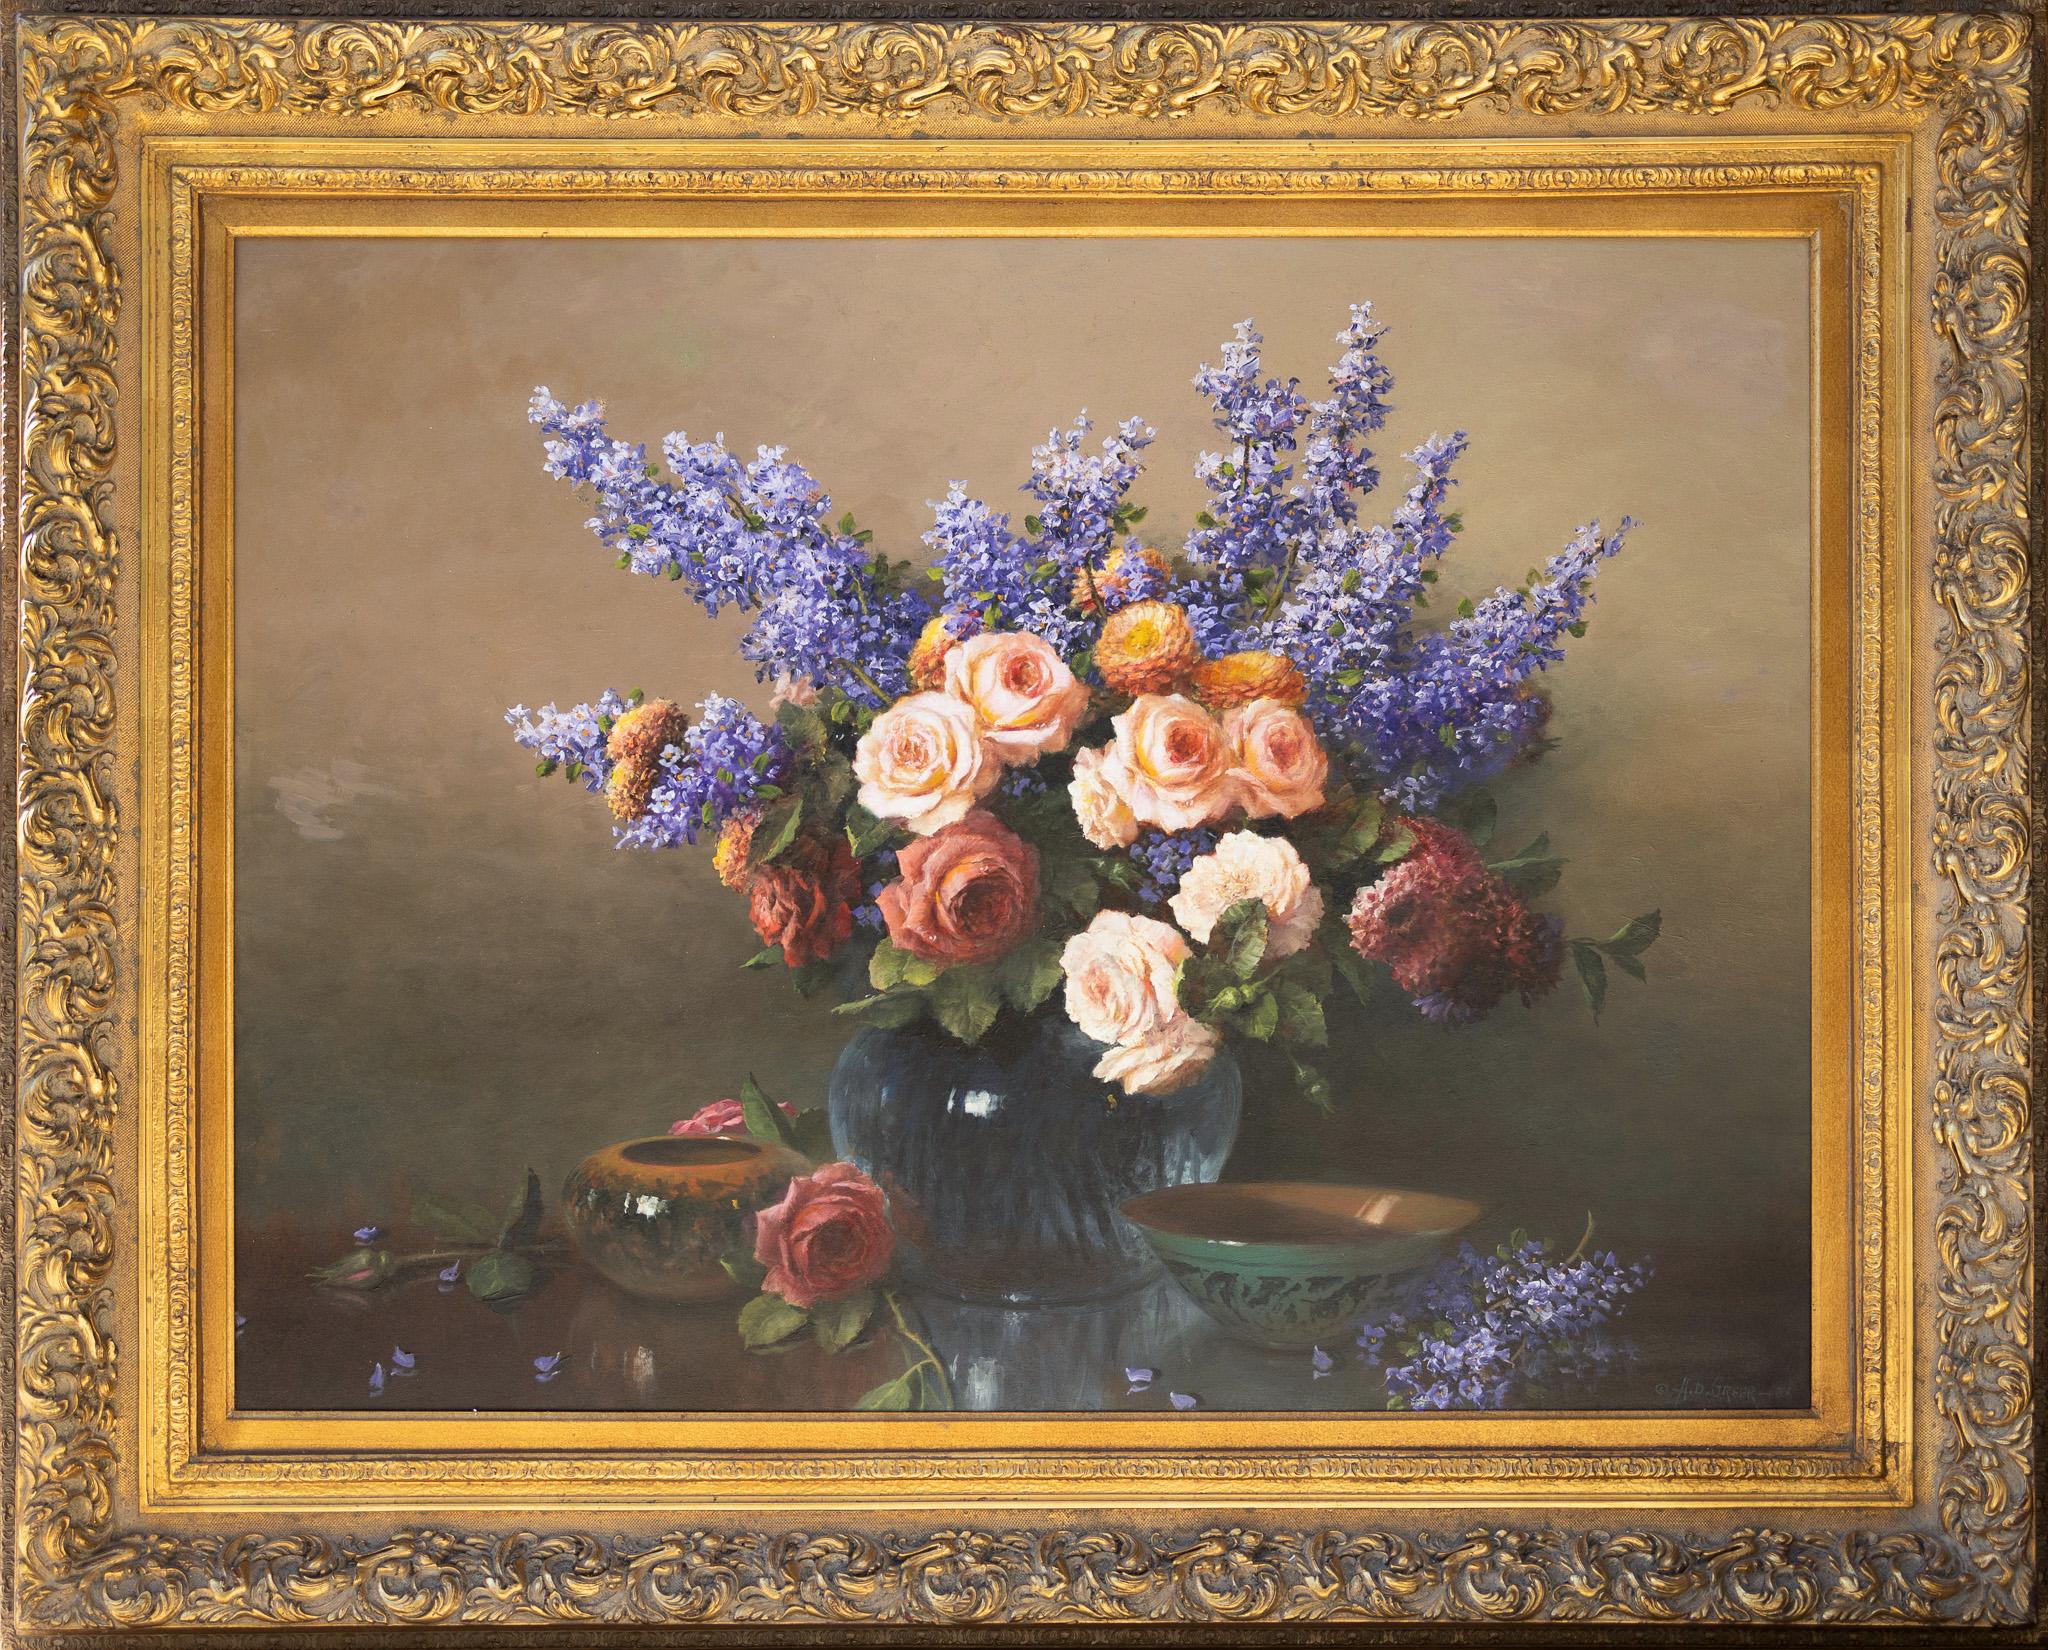 Nature morte florale avec roses, lilas et zinnias - Réalisme américain Painting par A.D. Greer